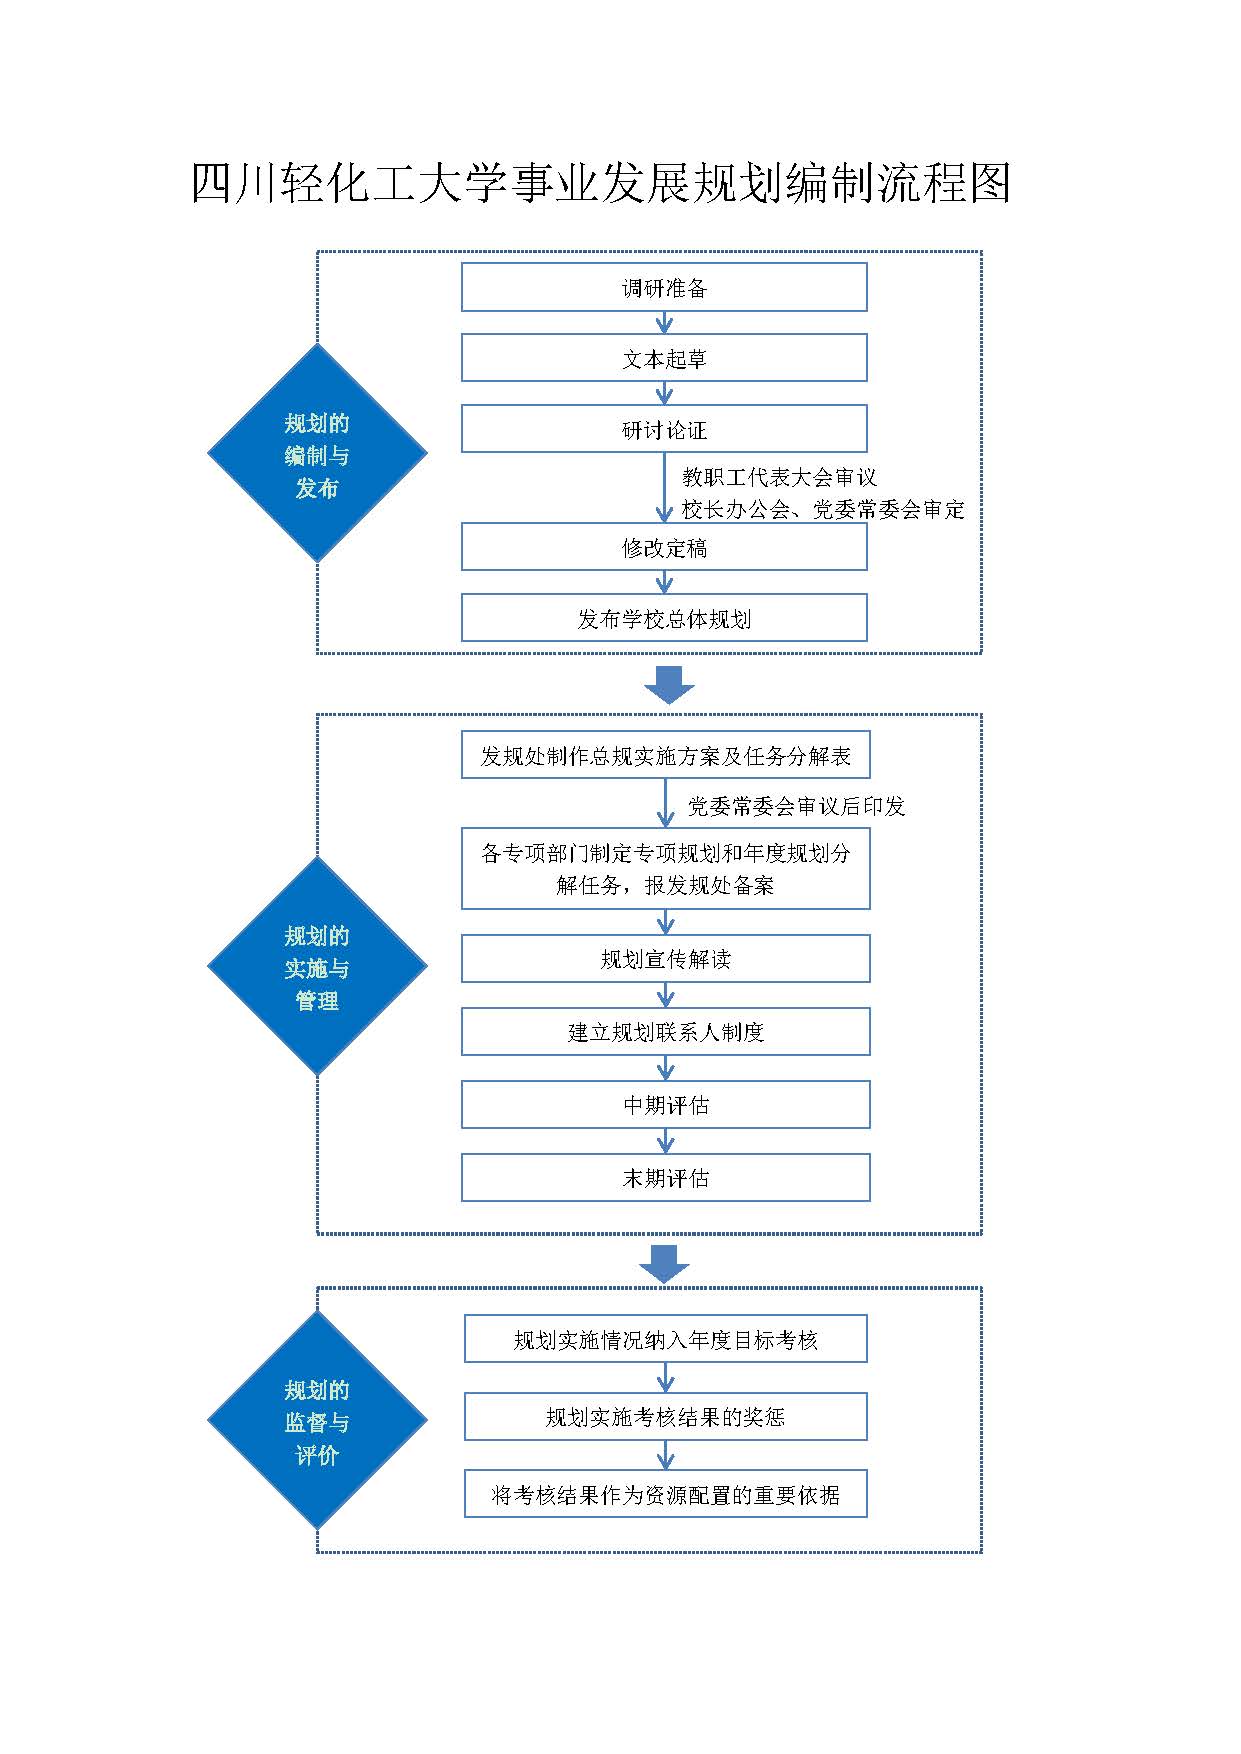 四川轻化工大学事业发展规划编制流程图.jpg